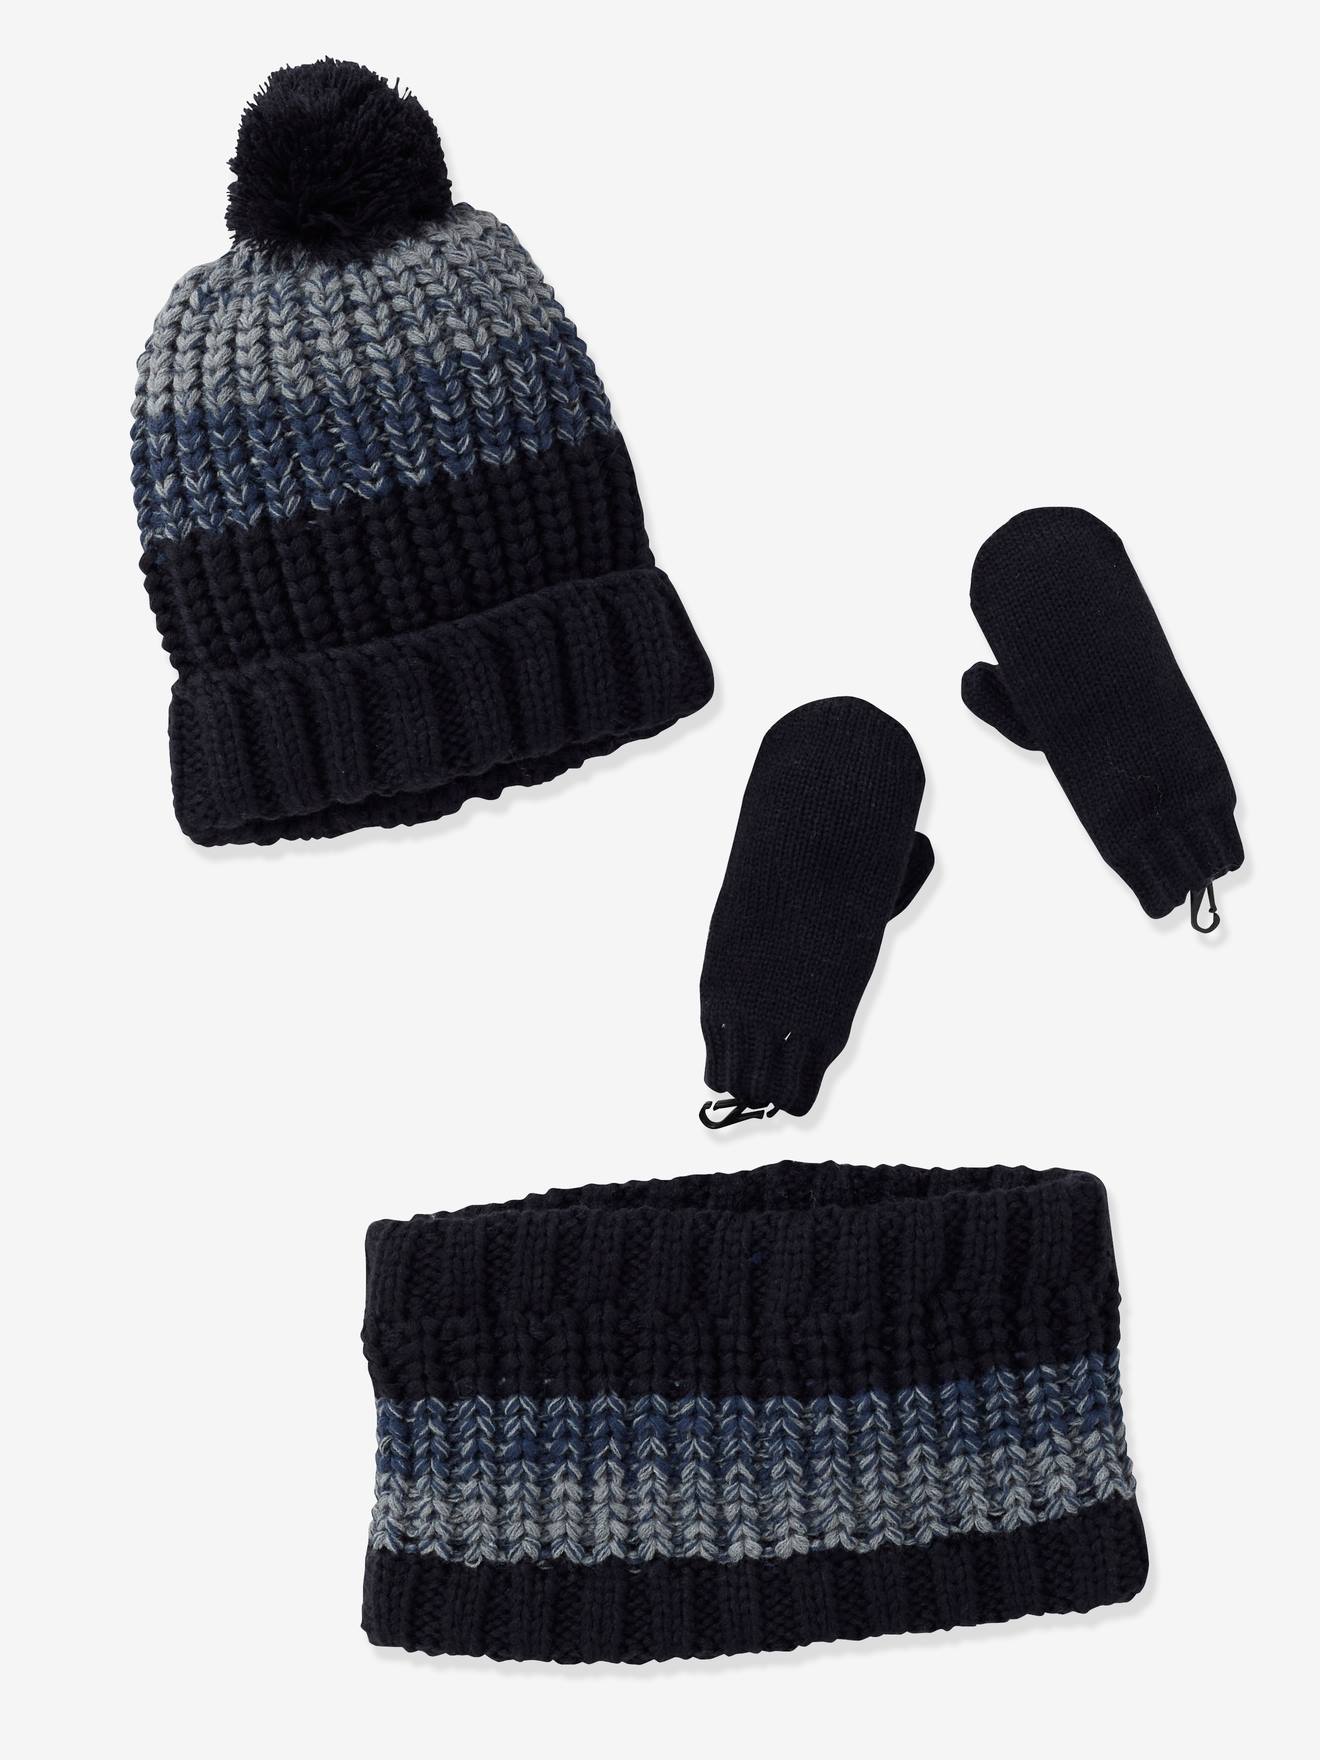 Ensemble bonnet + snood + moufles ou gants garçon en tricot lot bleu jean